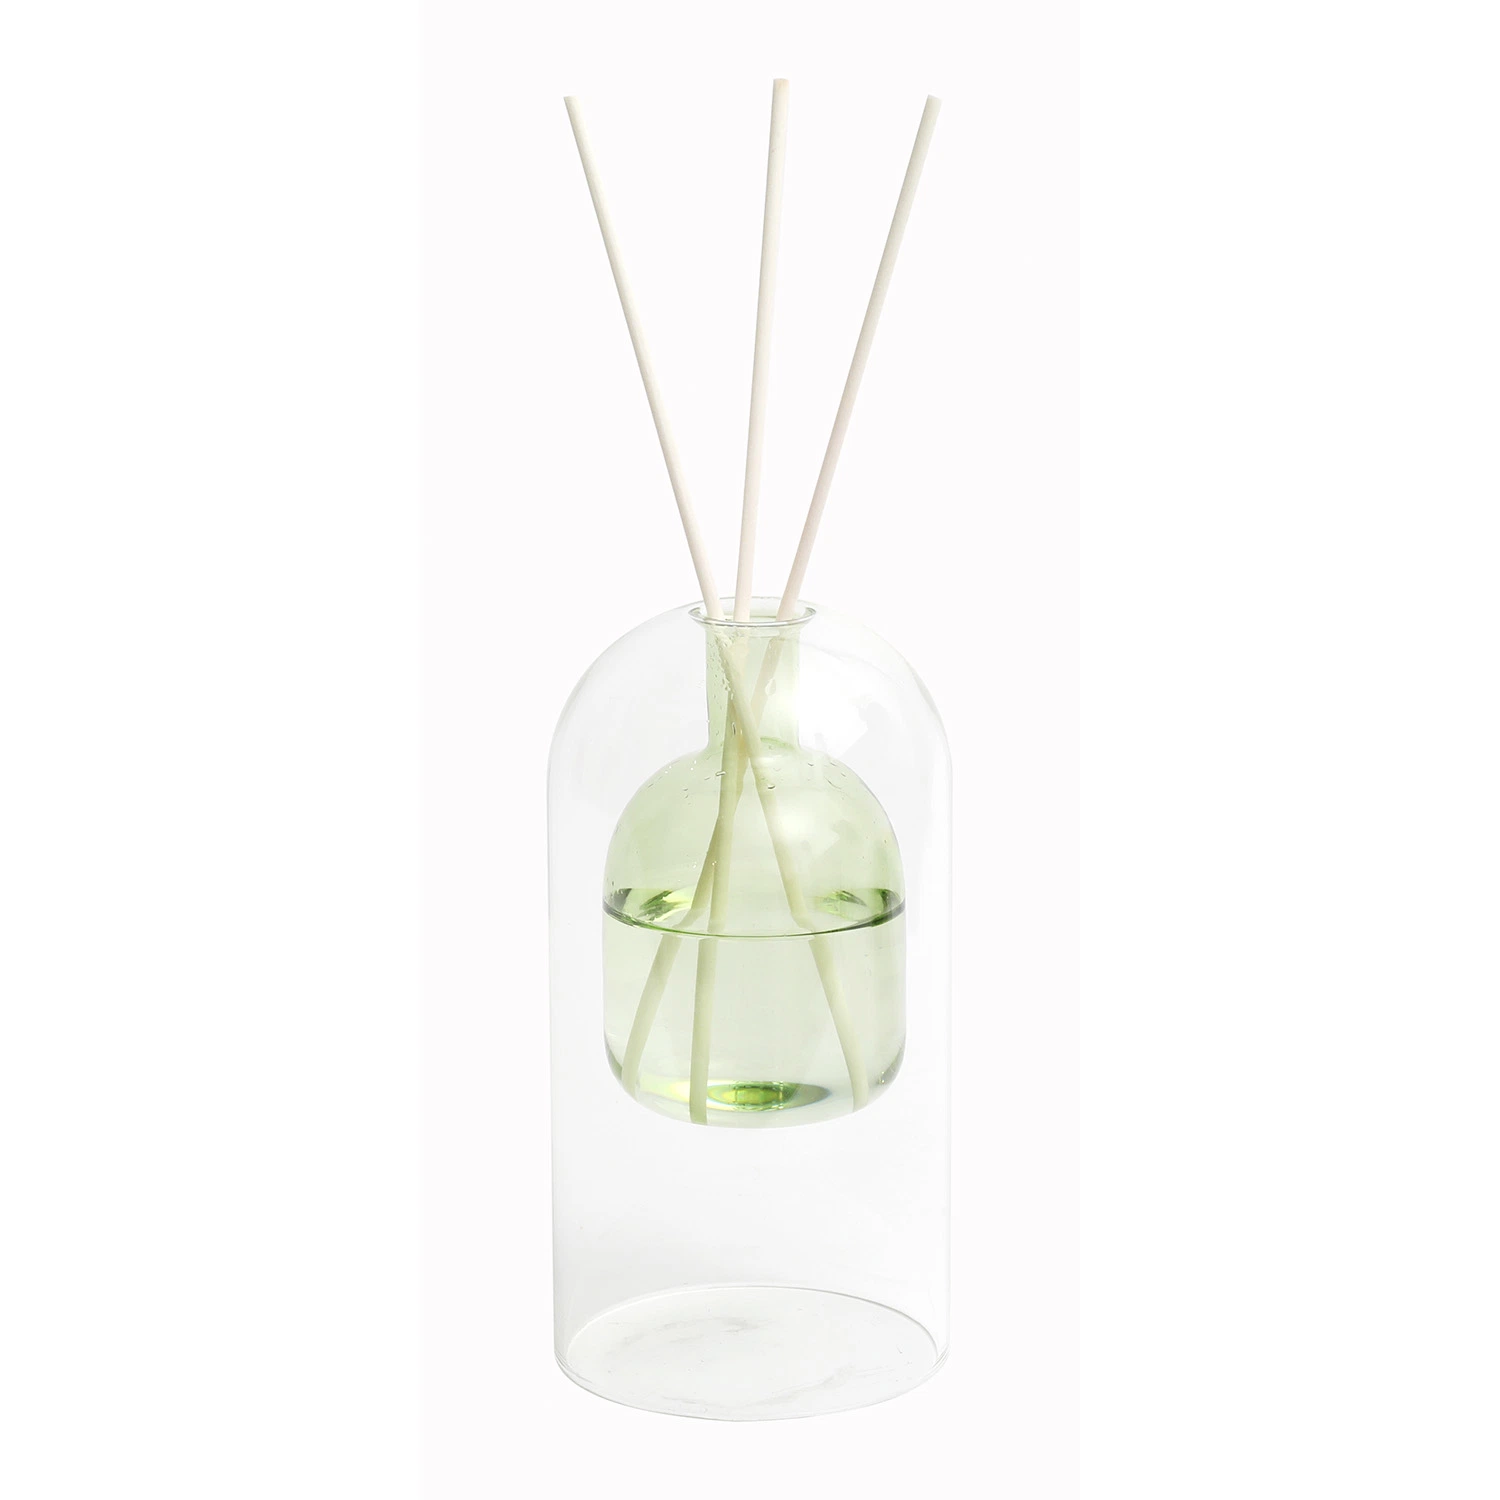 Aroma Decor Factory a produit un diffuseur de parfum à roseaux en verre double carré, idéal pour offrir en cadeau.